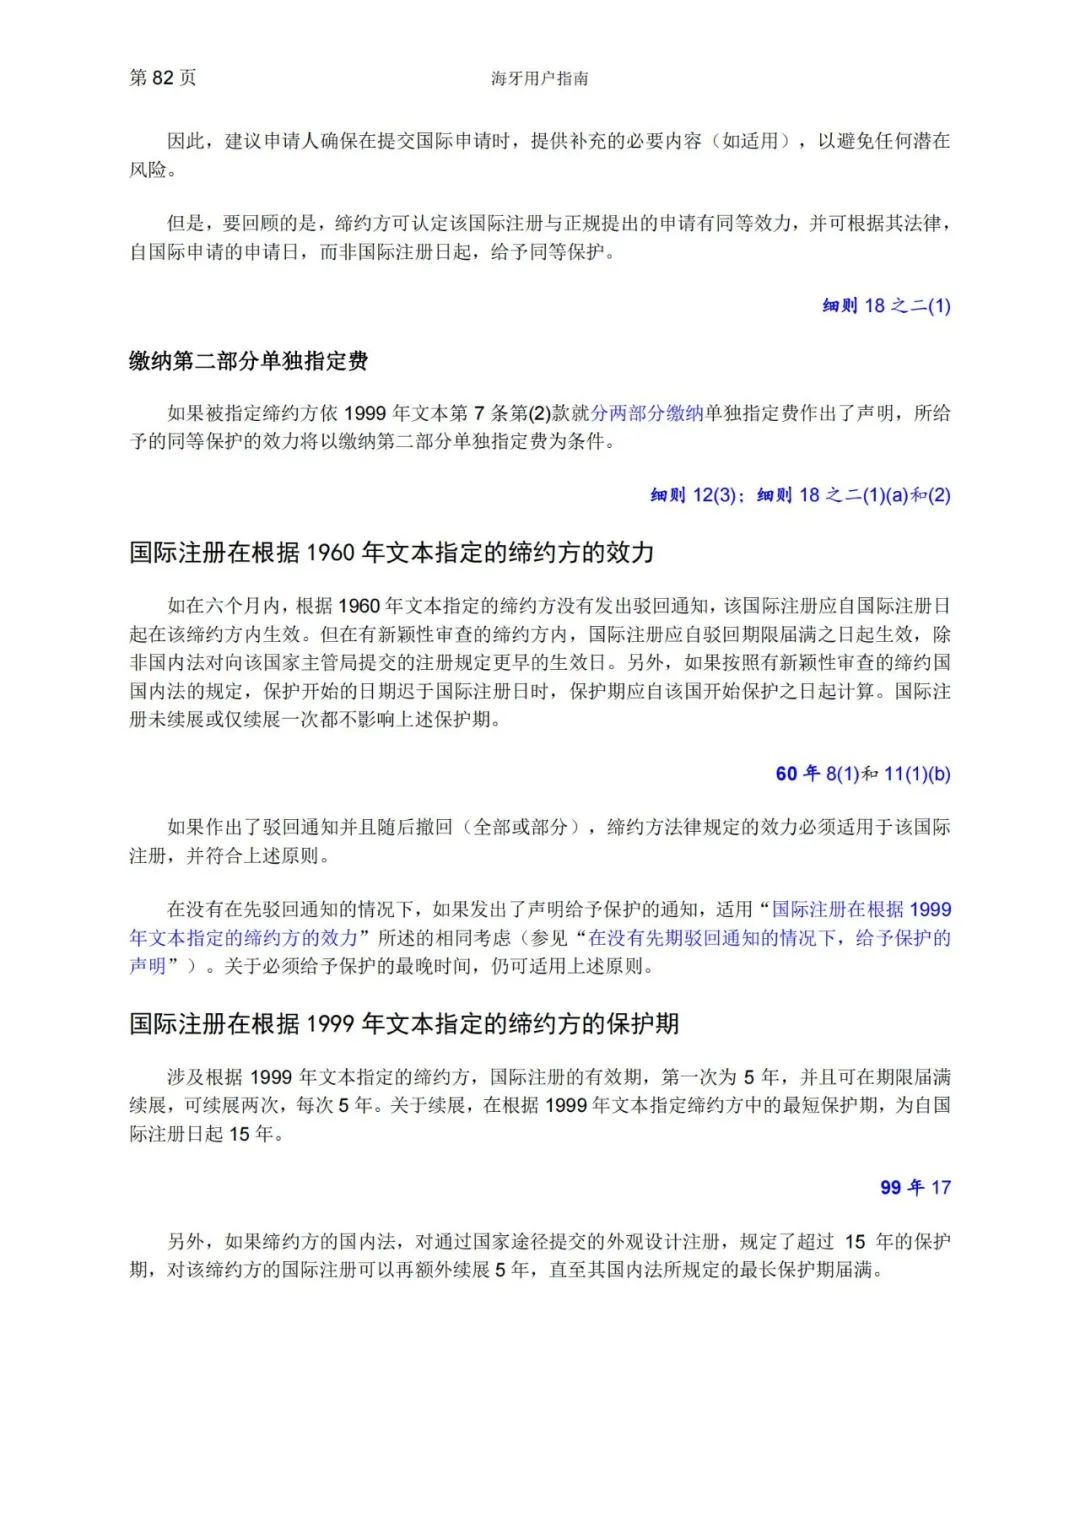 华为、小米等21家中国企业通过海牙体系提交了50件外观设计国际注册申请（附：海牙用户指南）